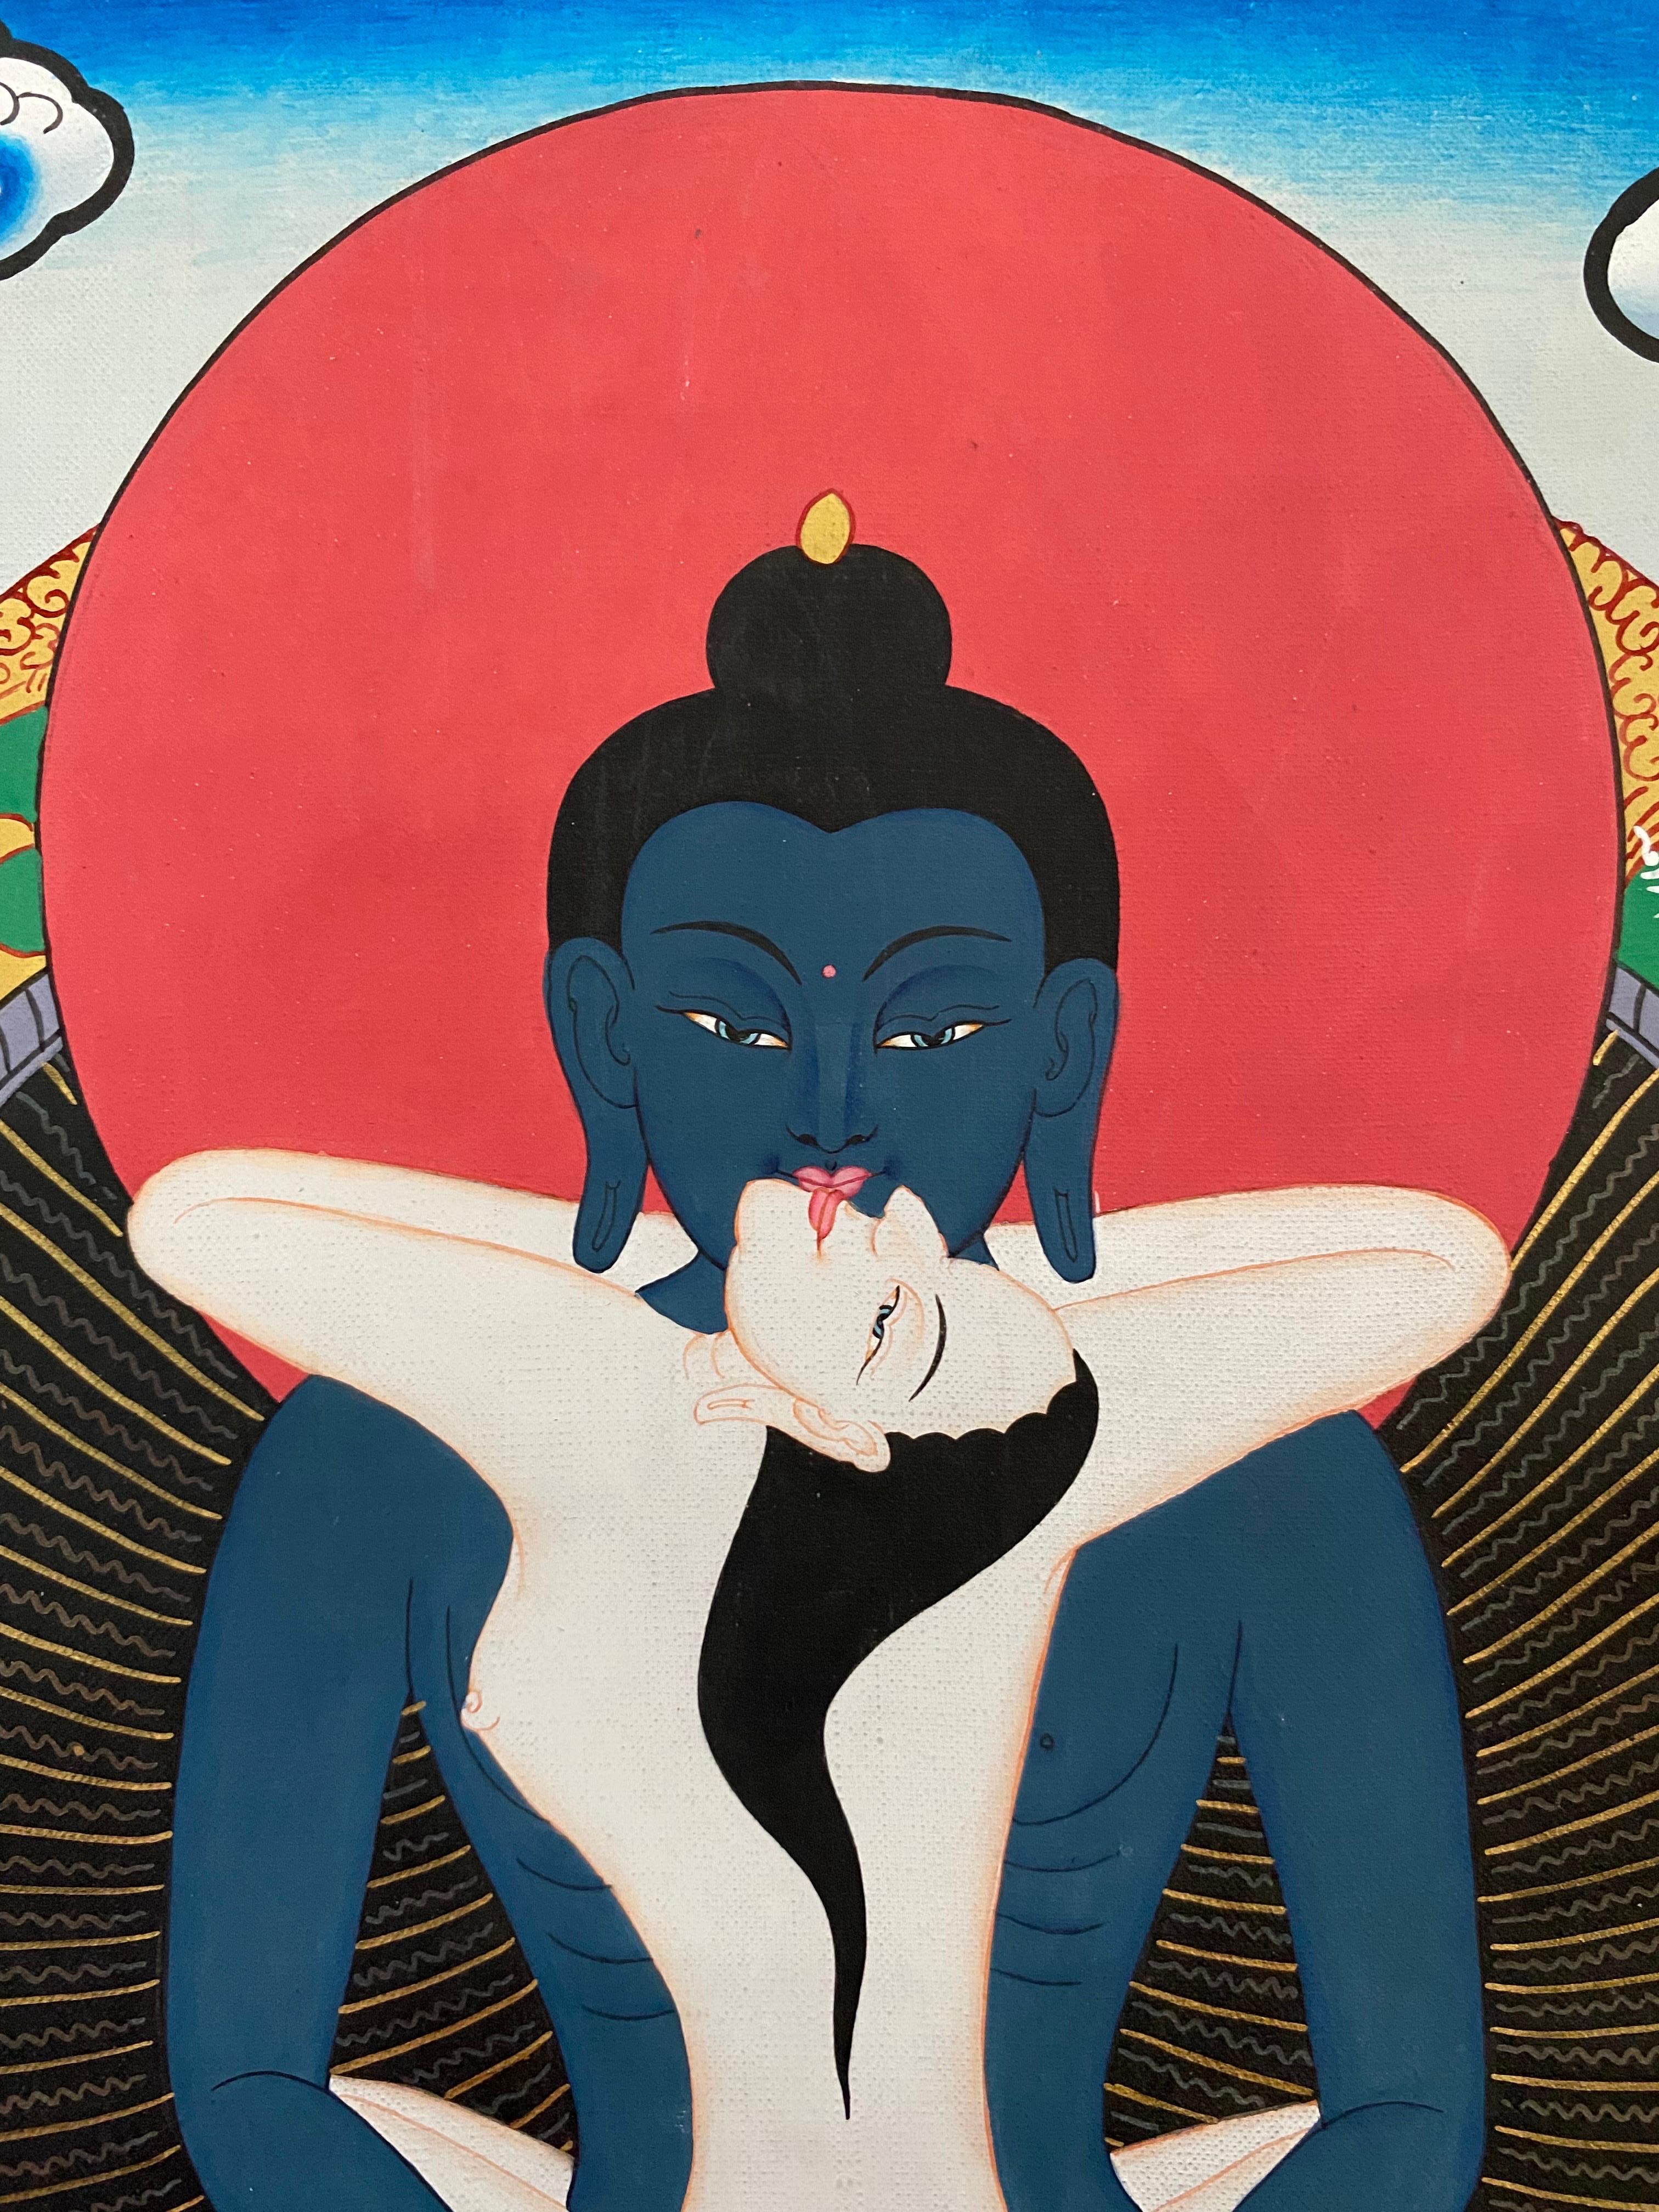 Bouddha Samantabhadra (Shakti)  est d'un bleu profond, symbolisant le ciel ou le vide de l'esprit. Samantabhadra ou consort de Bouddha est de couleur blanche, symbolisant l'aspect de la clarté de notre esprit. L'union du mâle et de la femelle d'Adi